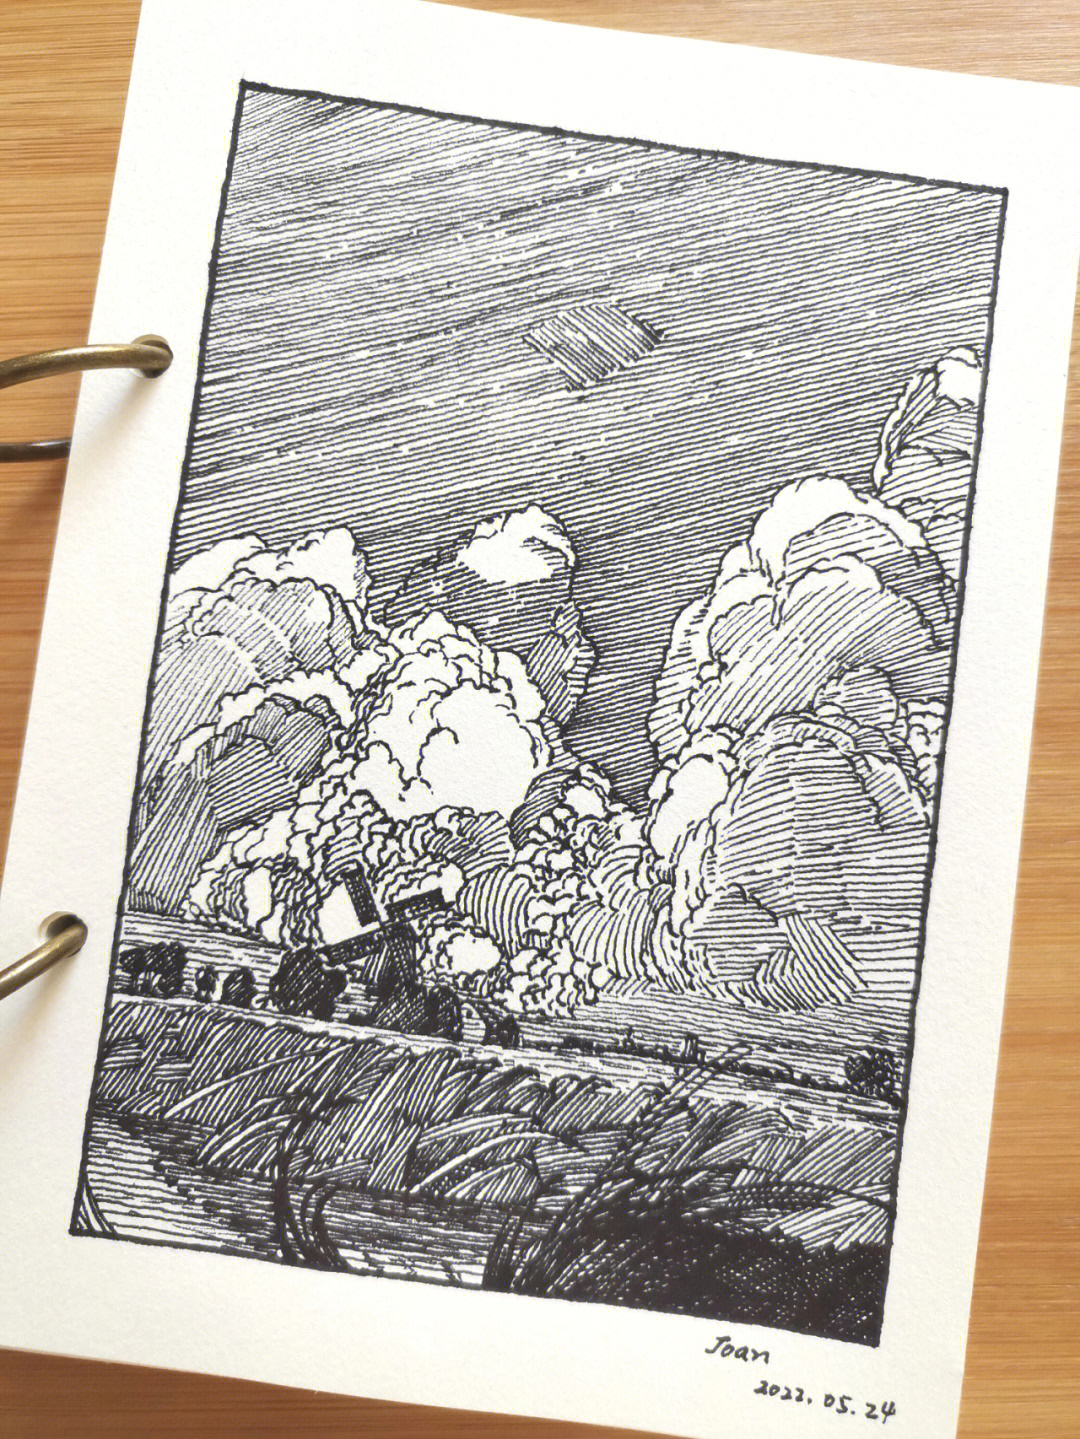 临摹富兰克林 布斯的钢笔画,又是翻车的一张,黑白灰关系拉的不够,天空